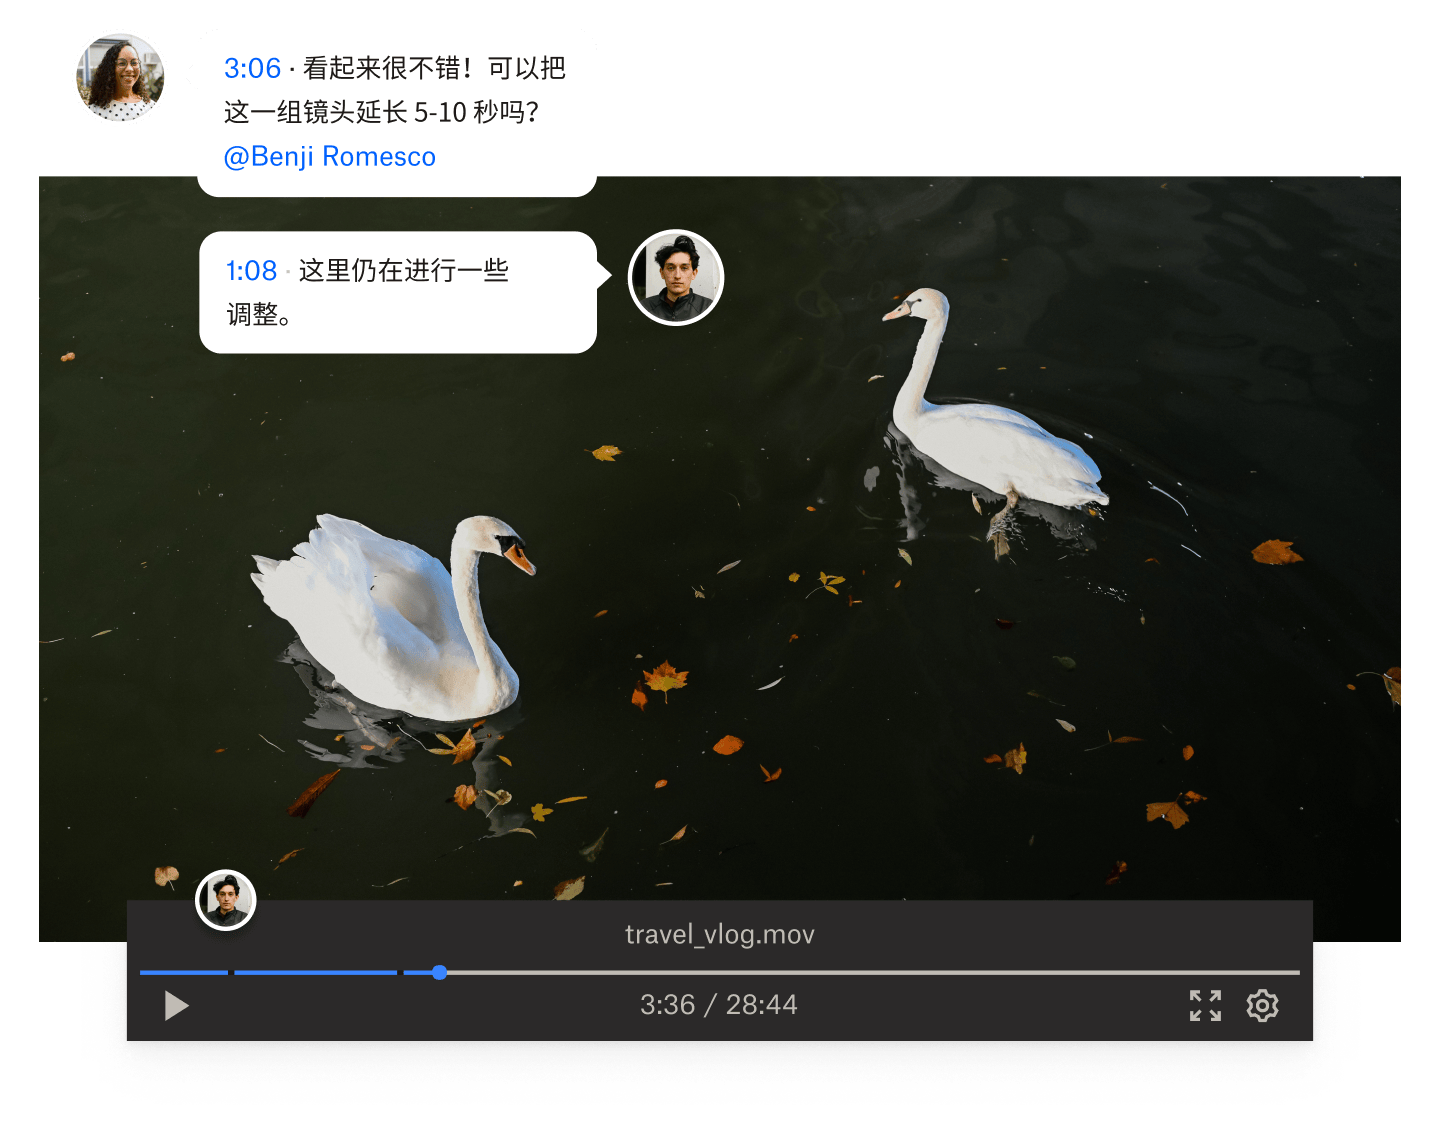 一段关于两只天鹅在水中游泳的静态视频，视频上覆盖有带时间戳的评论